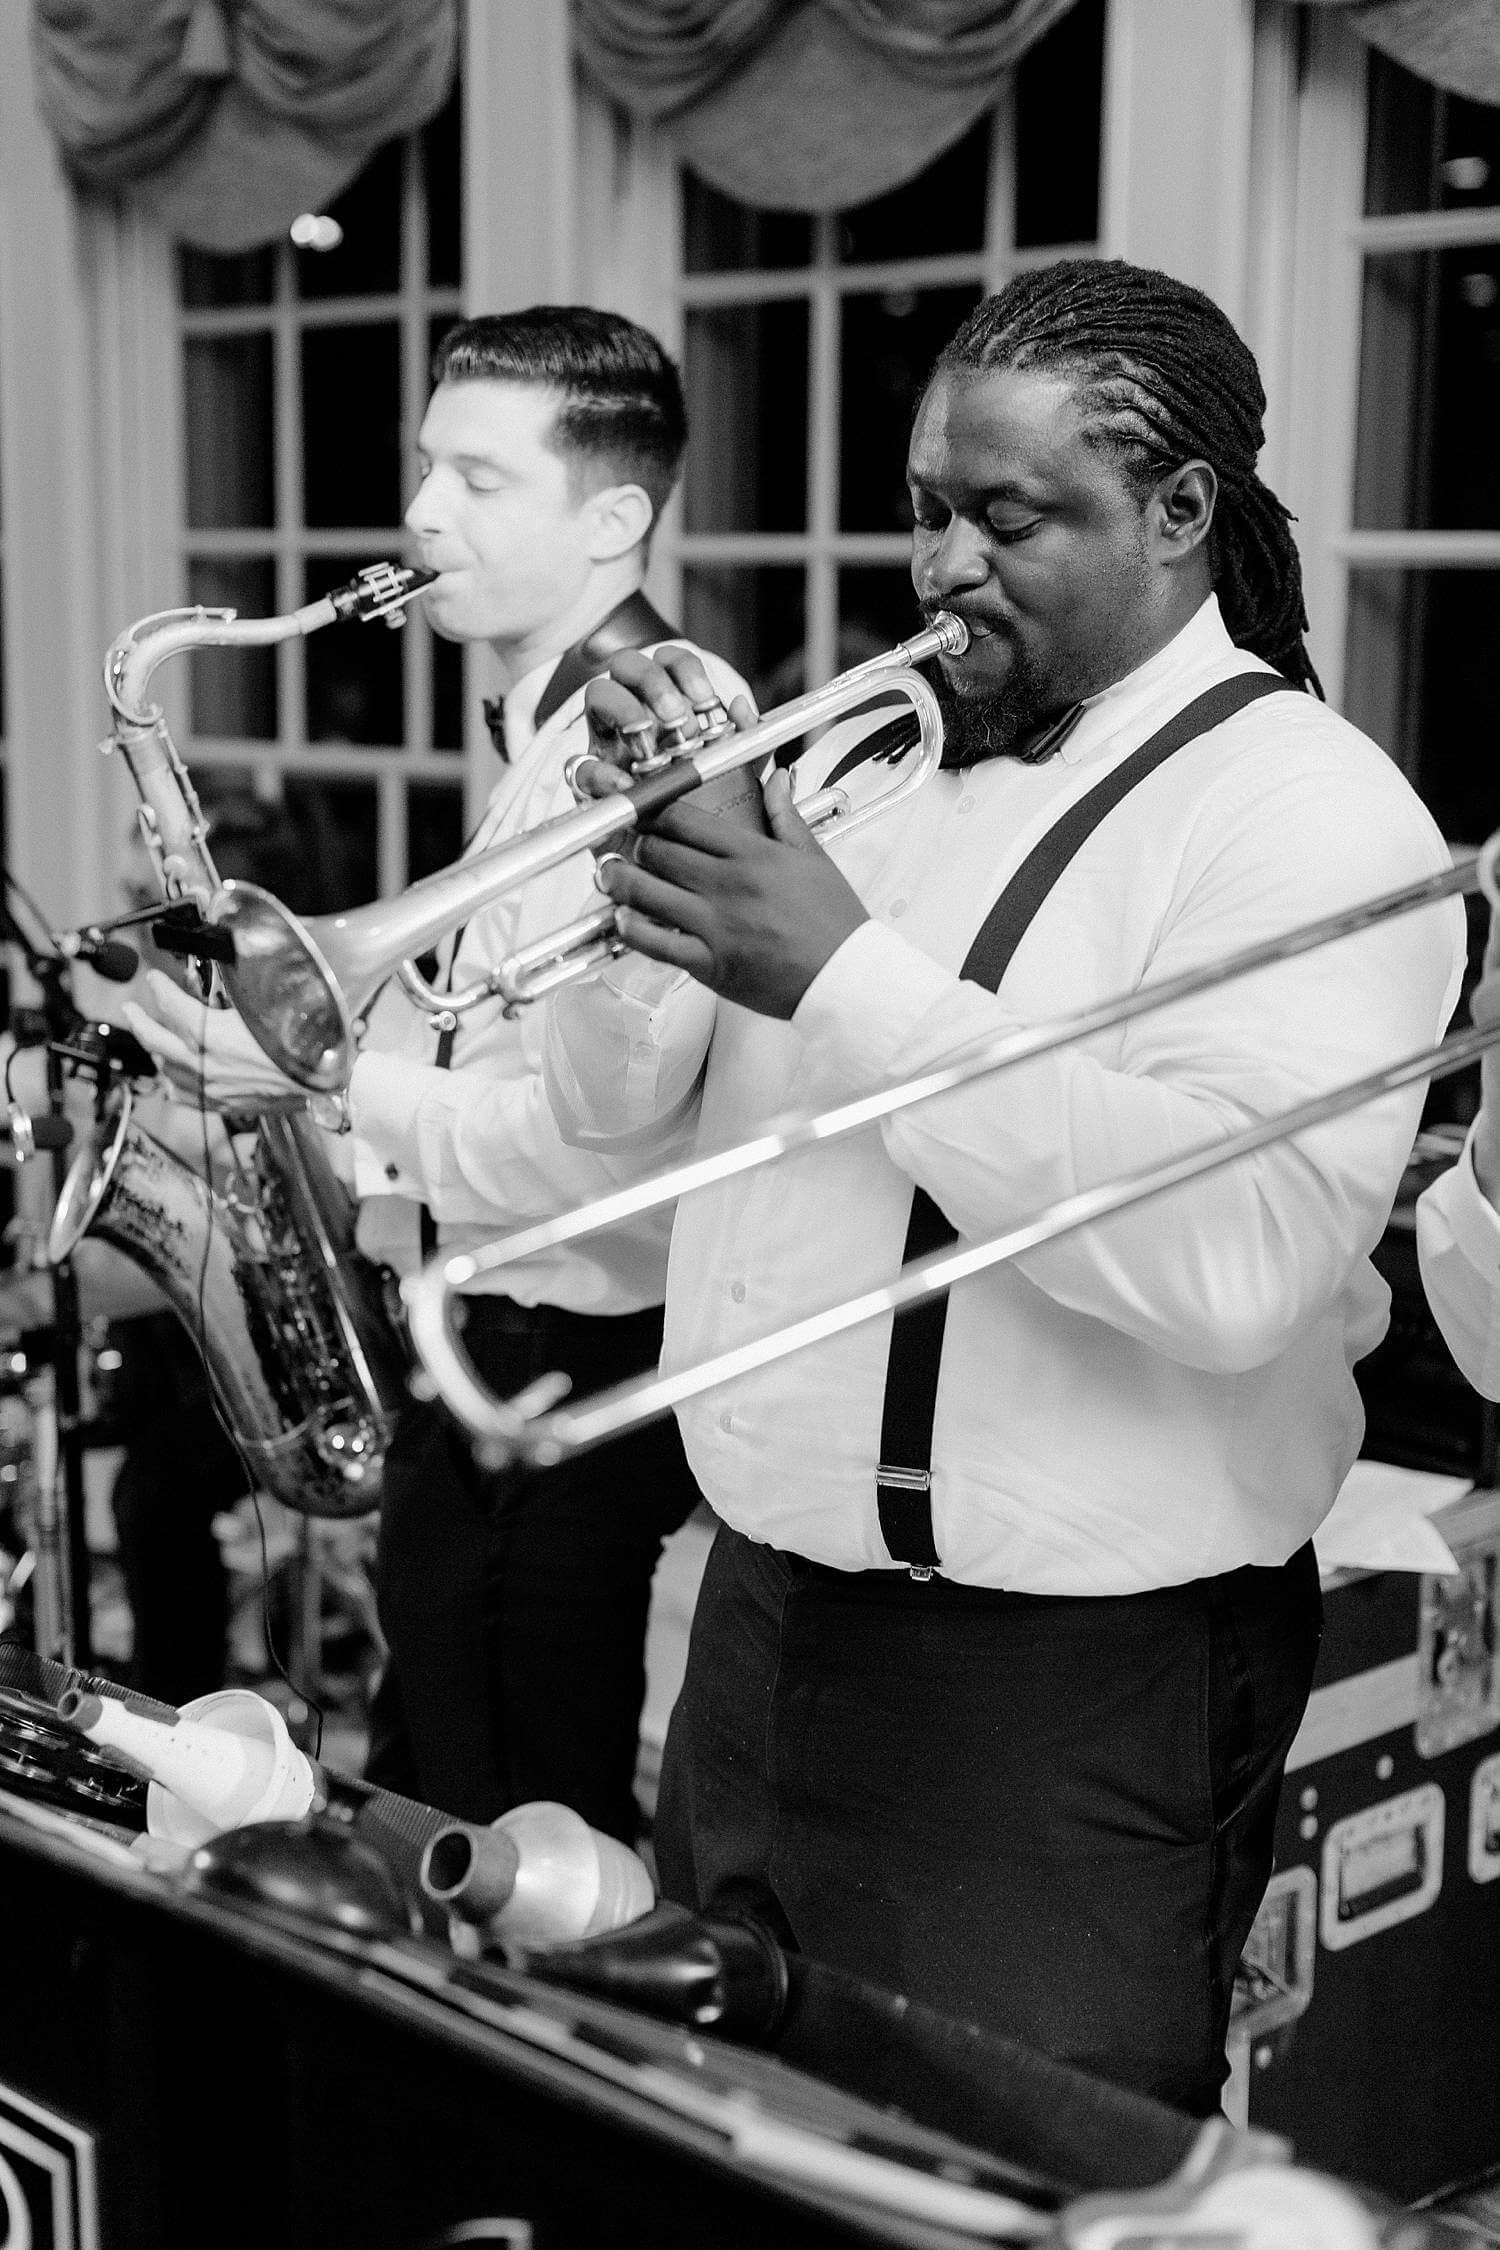 Band playing at a wedding at The Williamsburg Inn